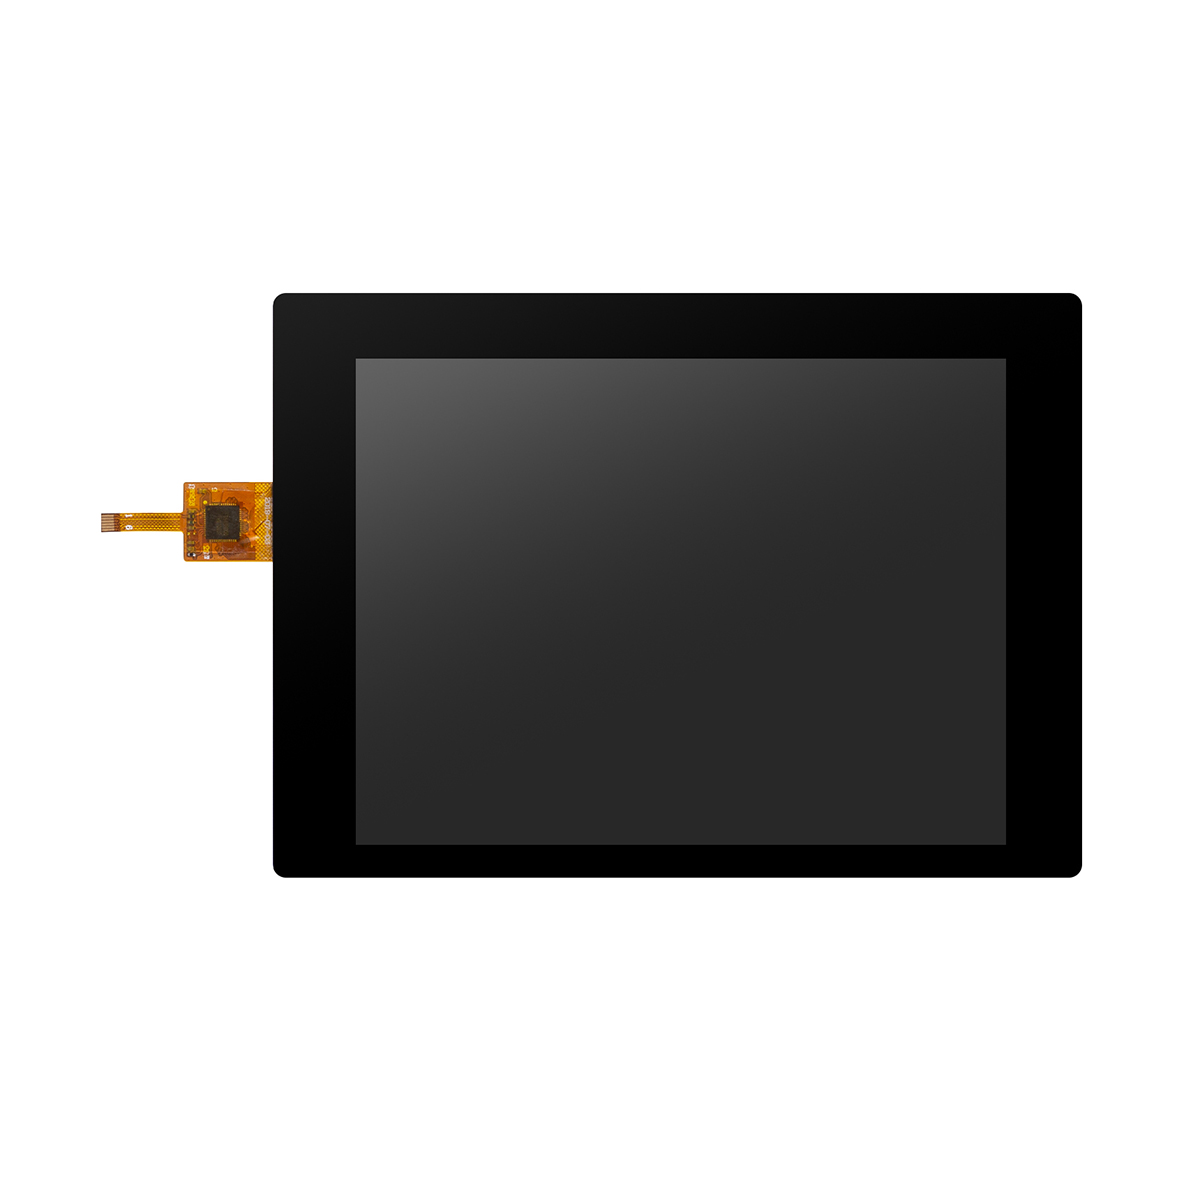 5,7 hüvelykes üvegpanel LCD érintőképernyős, testreszabott kijelző Kiemelt kép